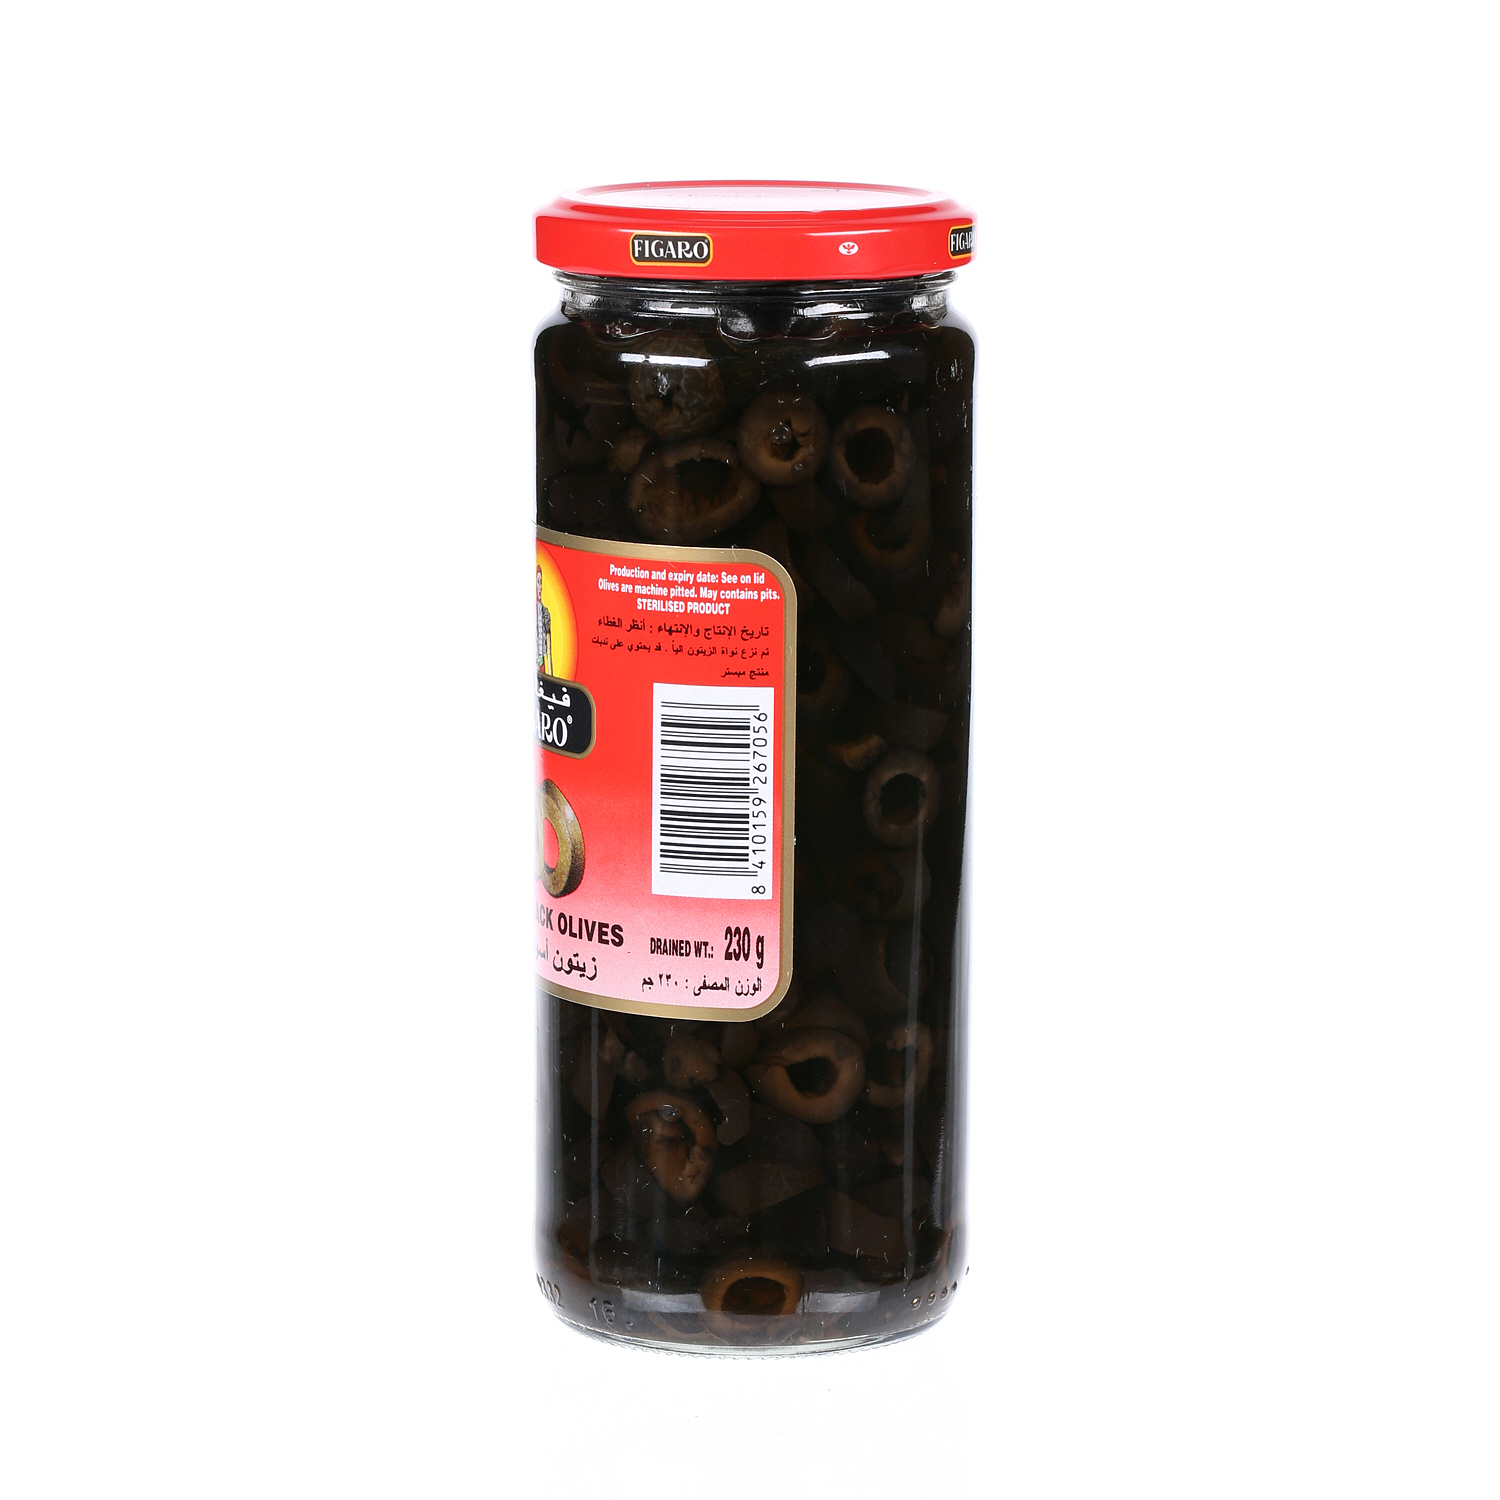 Figaro Slicesd Black Olives 230 g